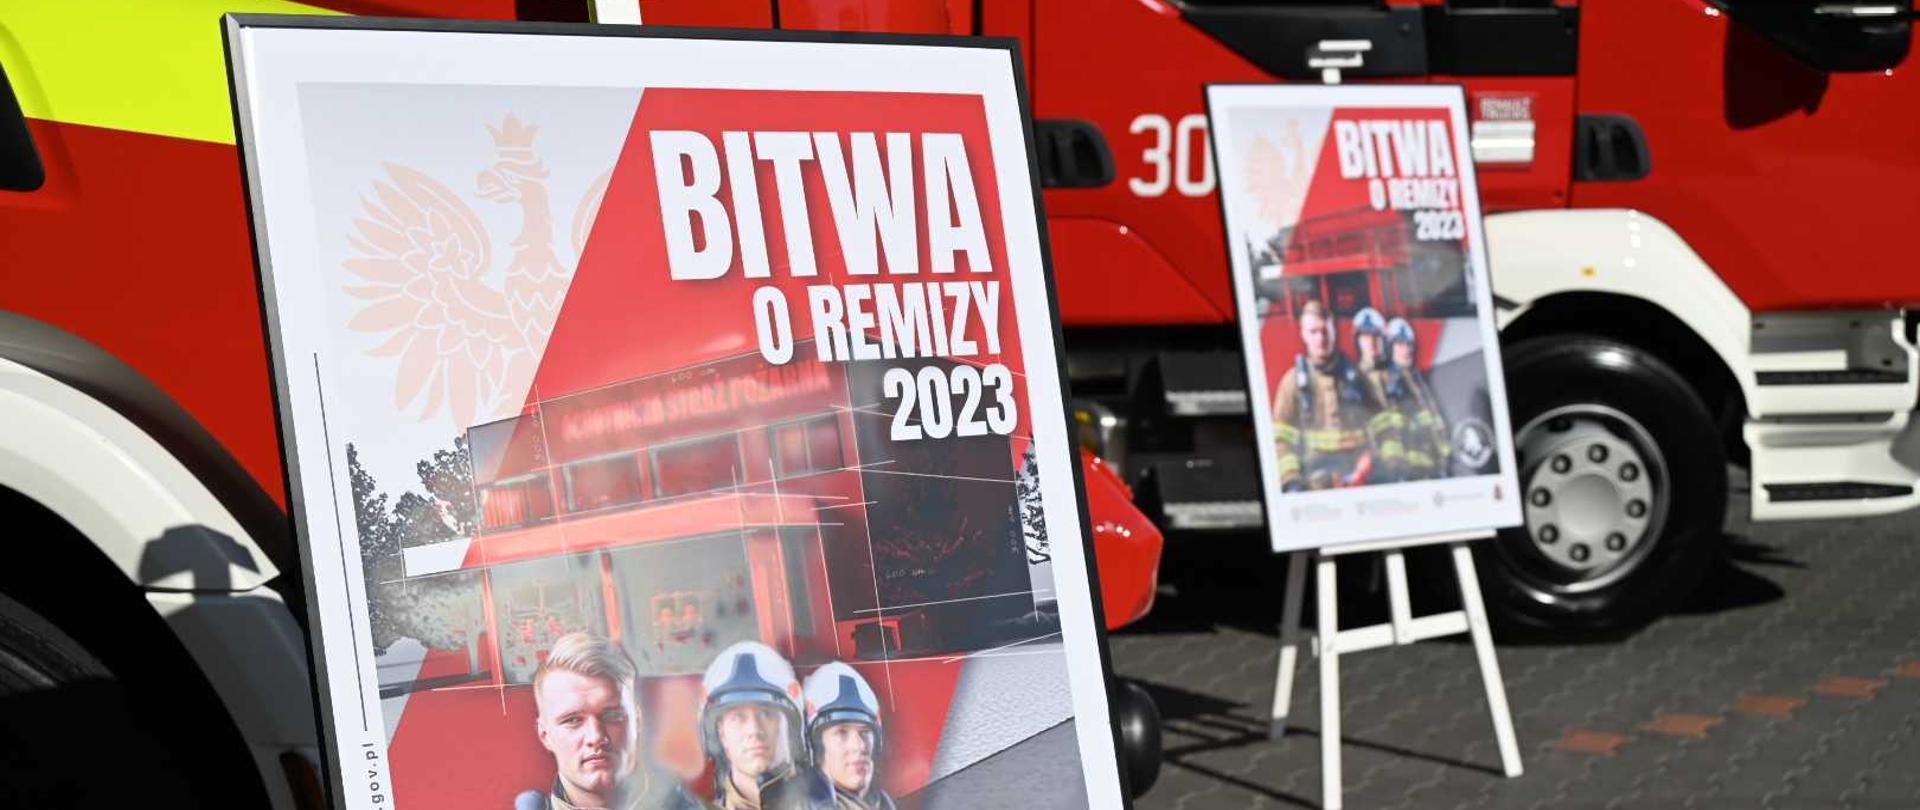 Zdjęcie przedstawia plakat promujący akcję "Bitwa o Remizy" na tle samochodów strażackich